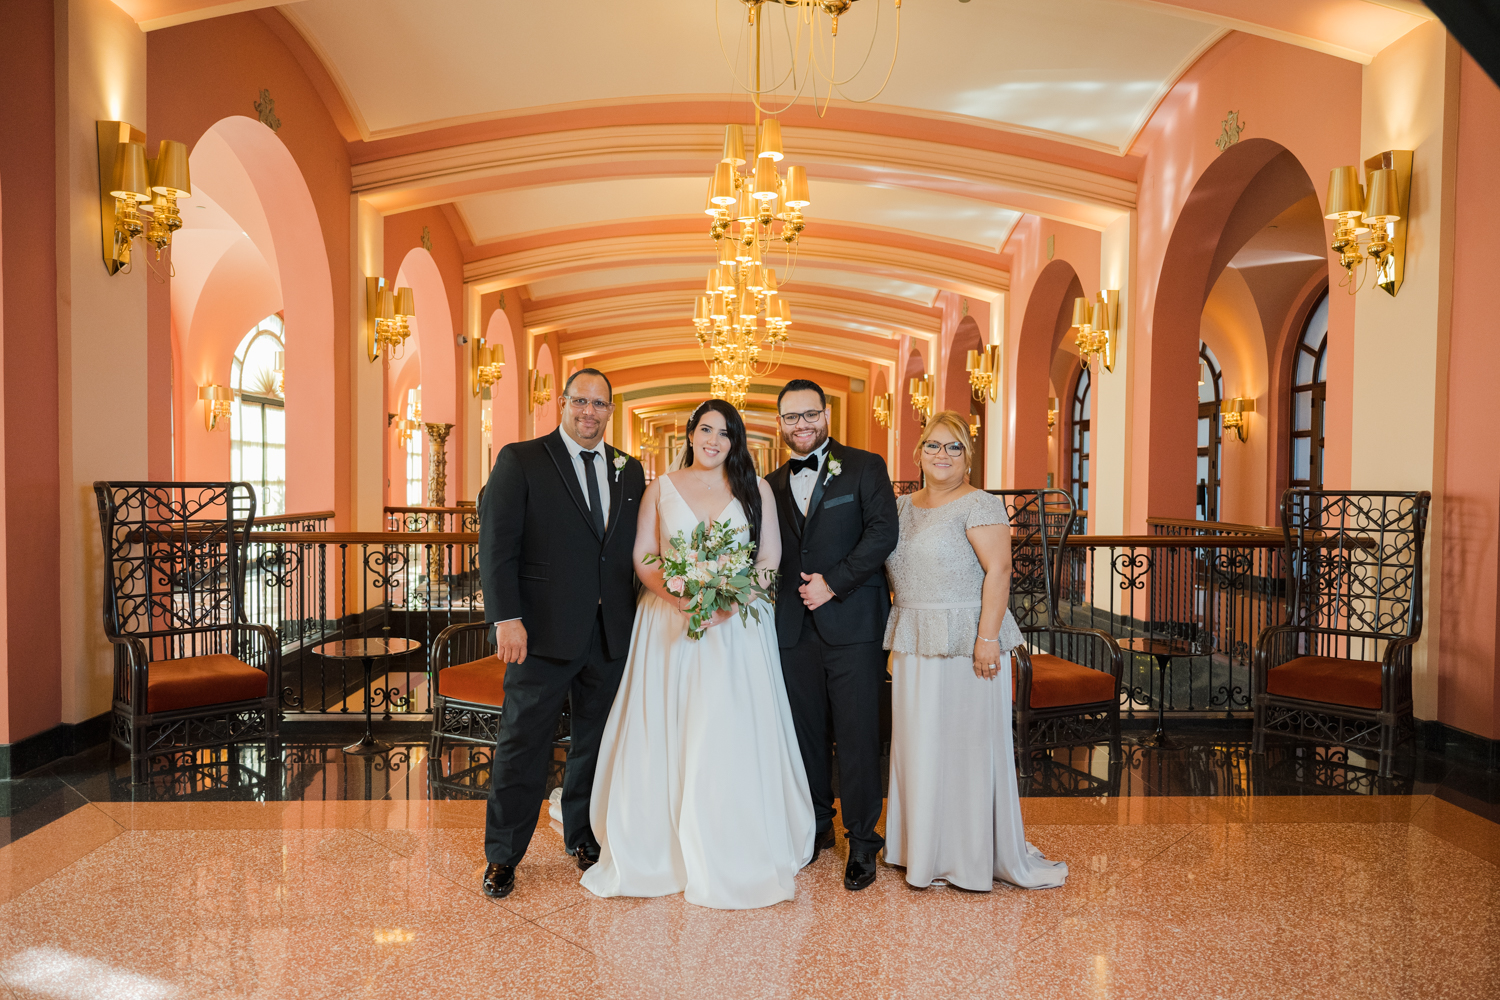 Condado Vanderbilt destination wedding photography in puerto rico